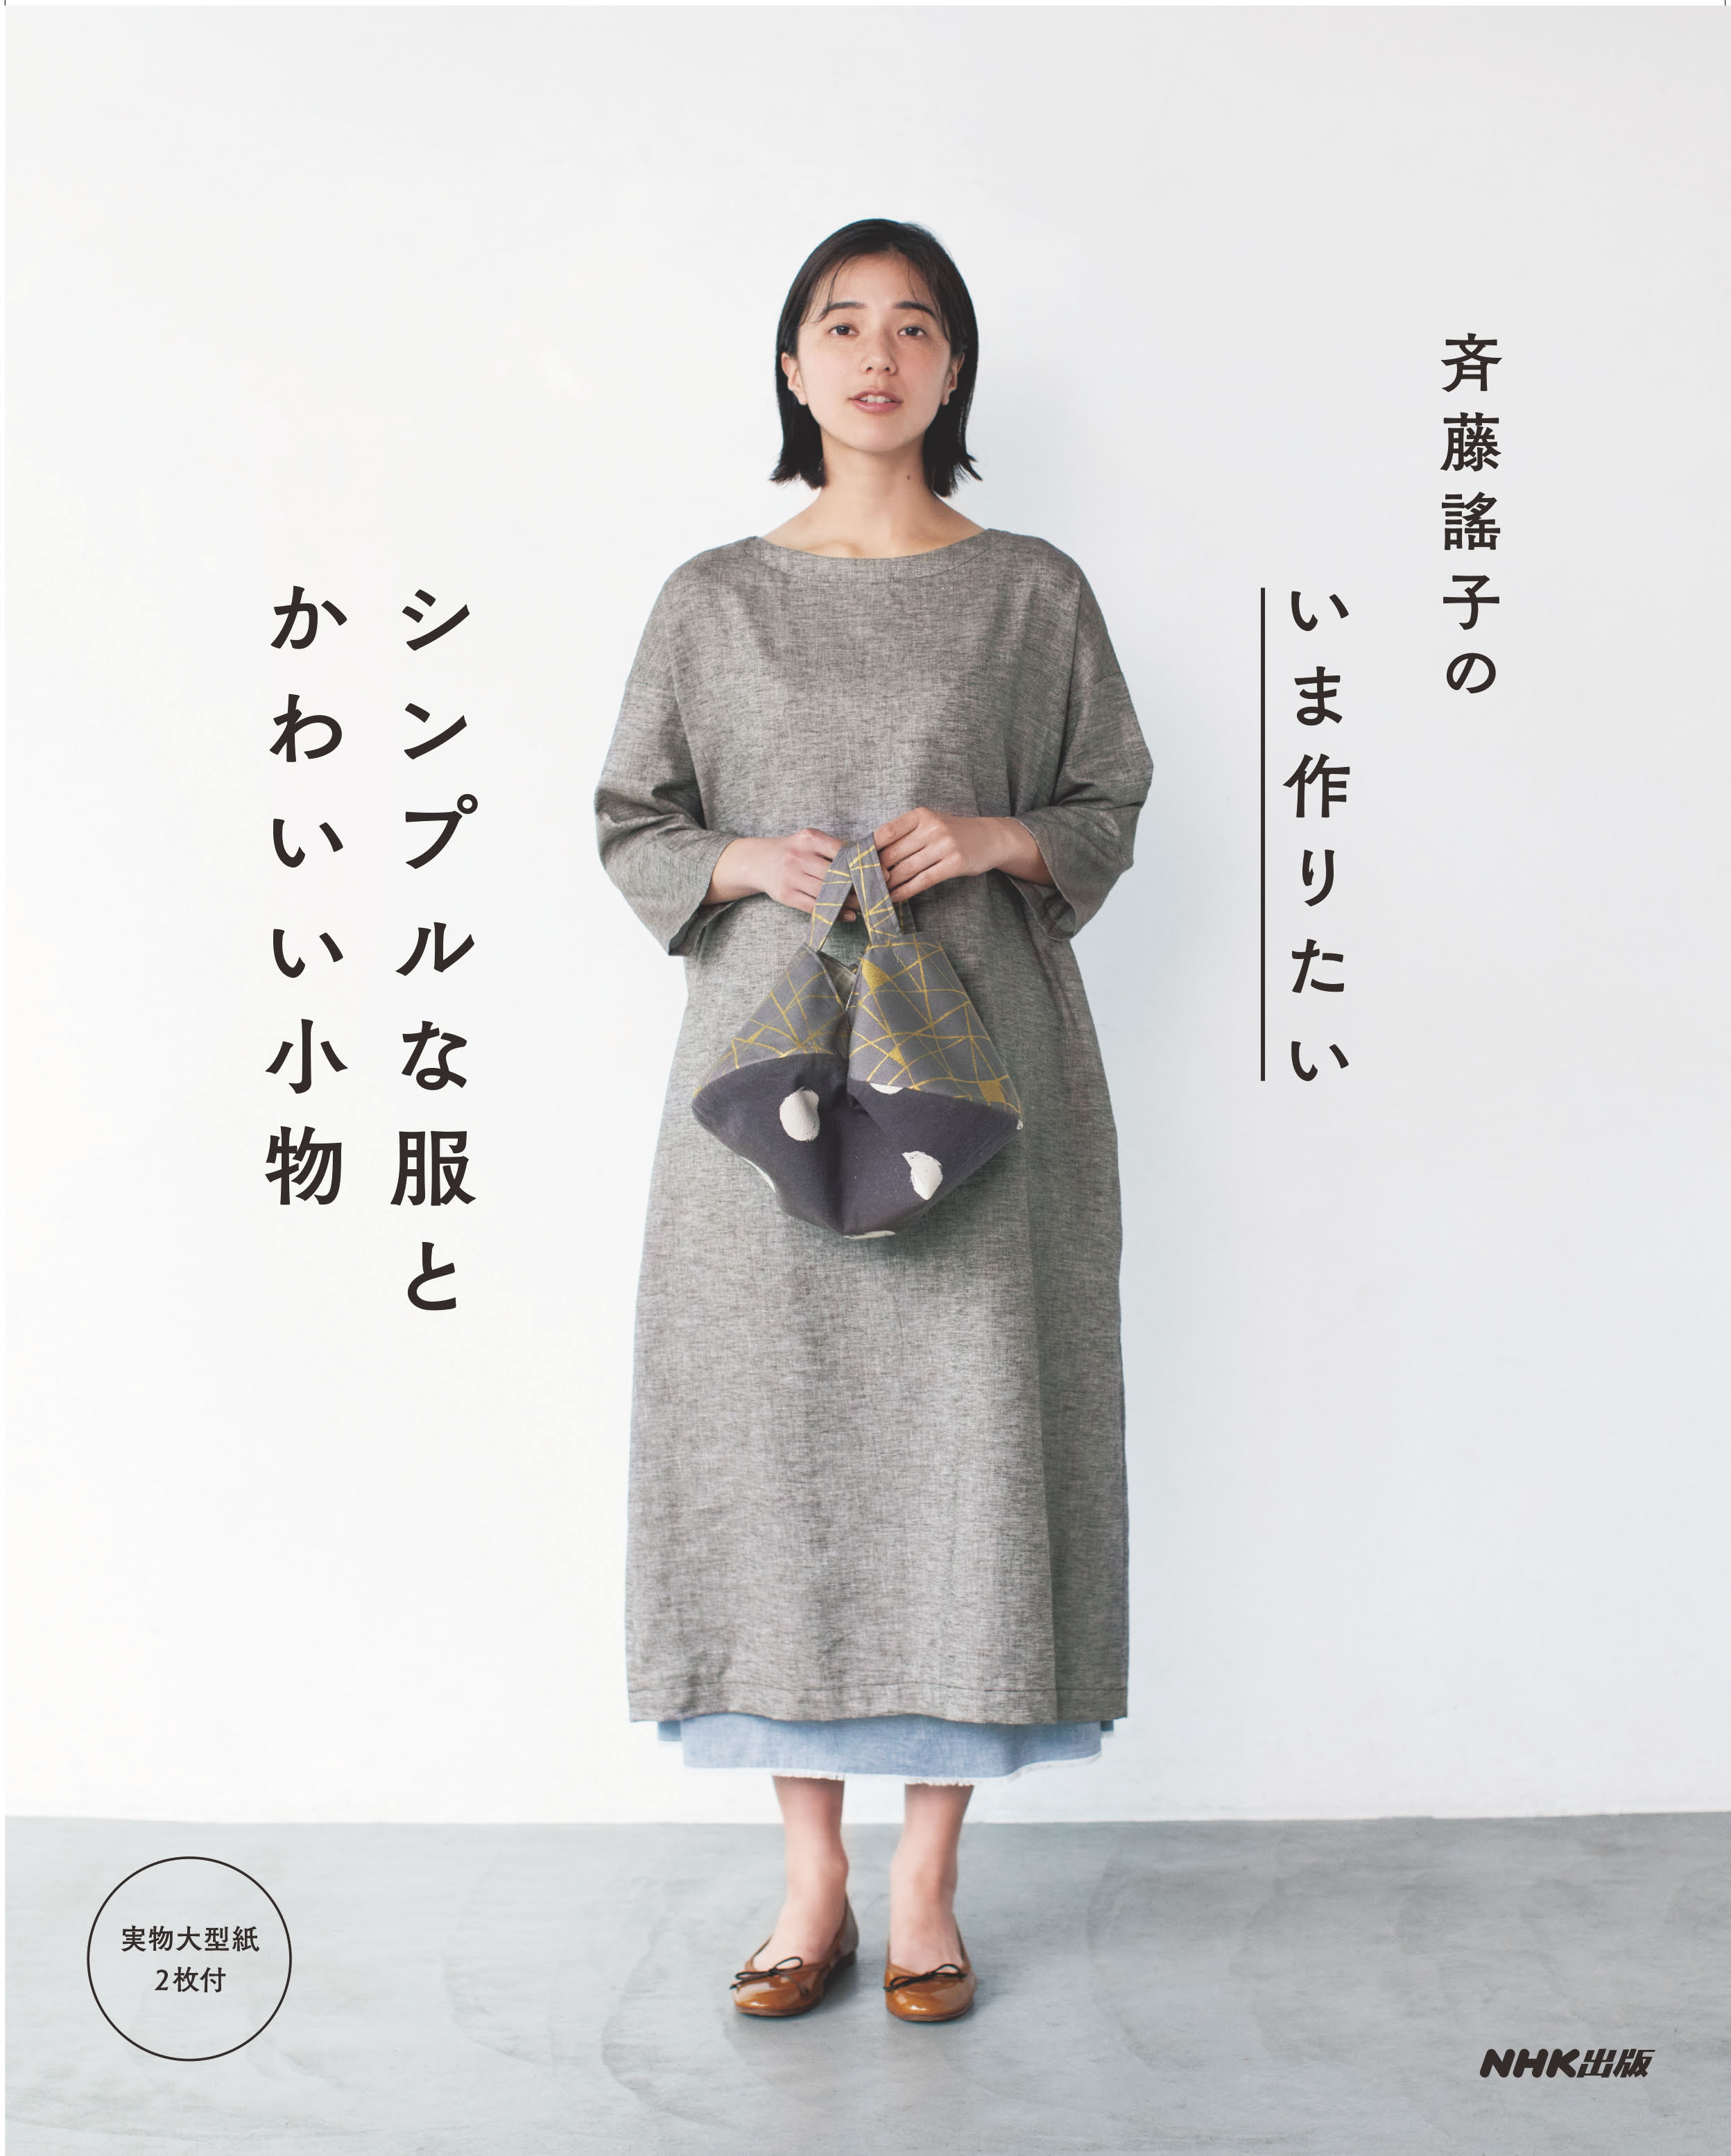 新商品が毎日入荷 斉藤遥子本を参考に制作したパッチワークのバッグ